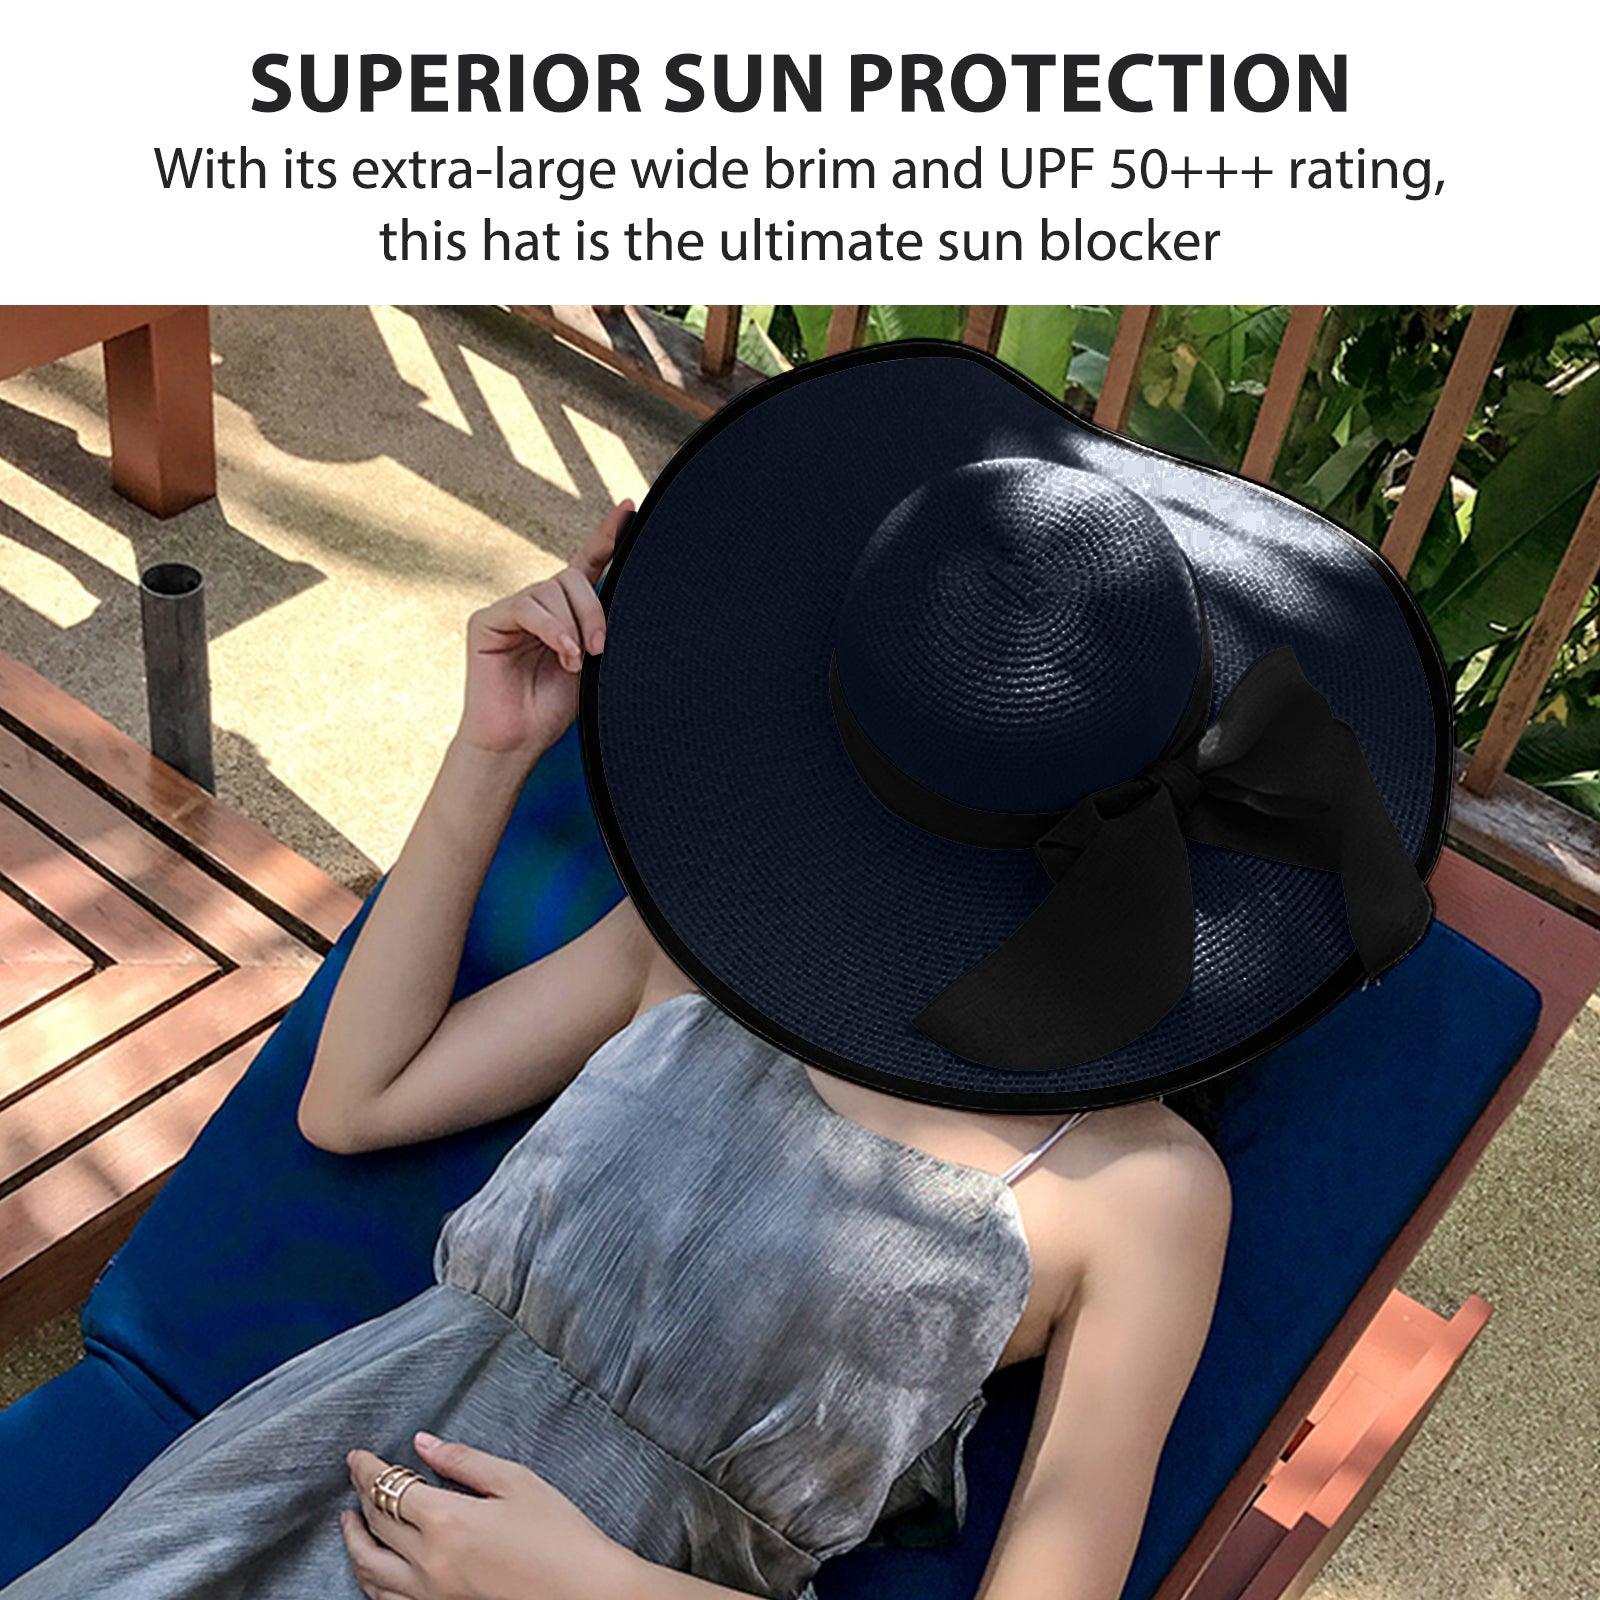 Women's Accessories - Hats Women Fashion Straw Sun Hat Wide Brim Hat Beach Summer Hat